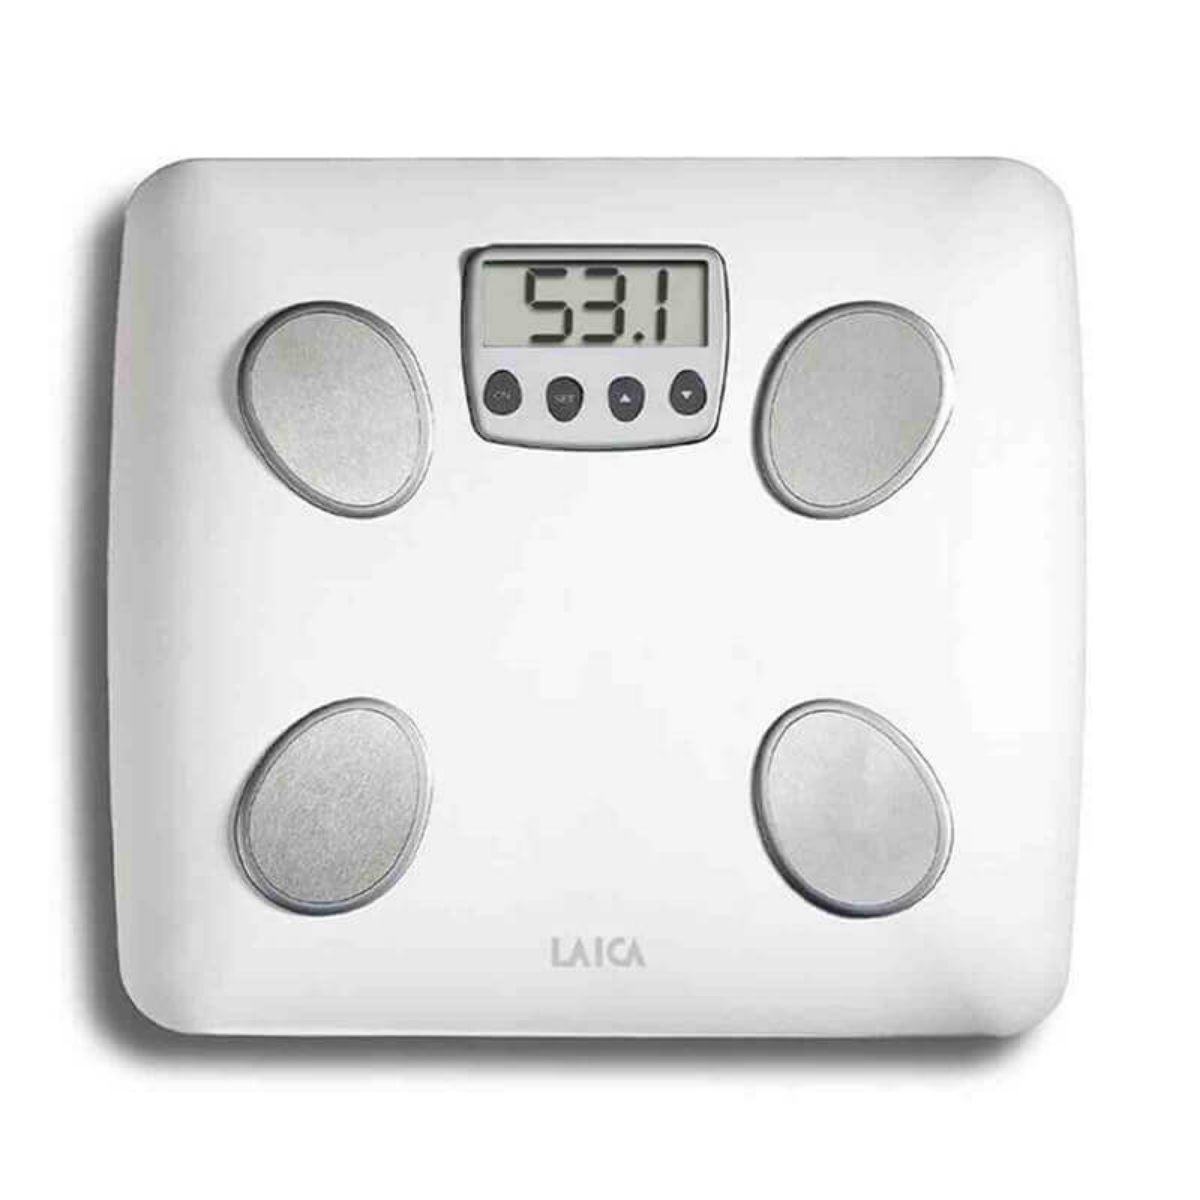 LAICA 500 lbs Body Analzyer Digital Bath Scale - Medium